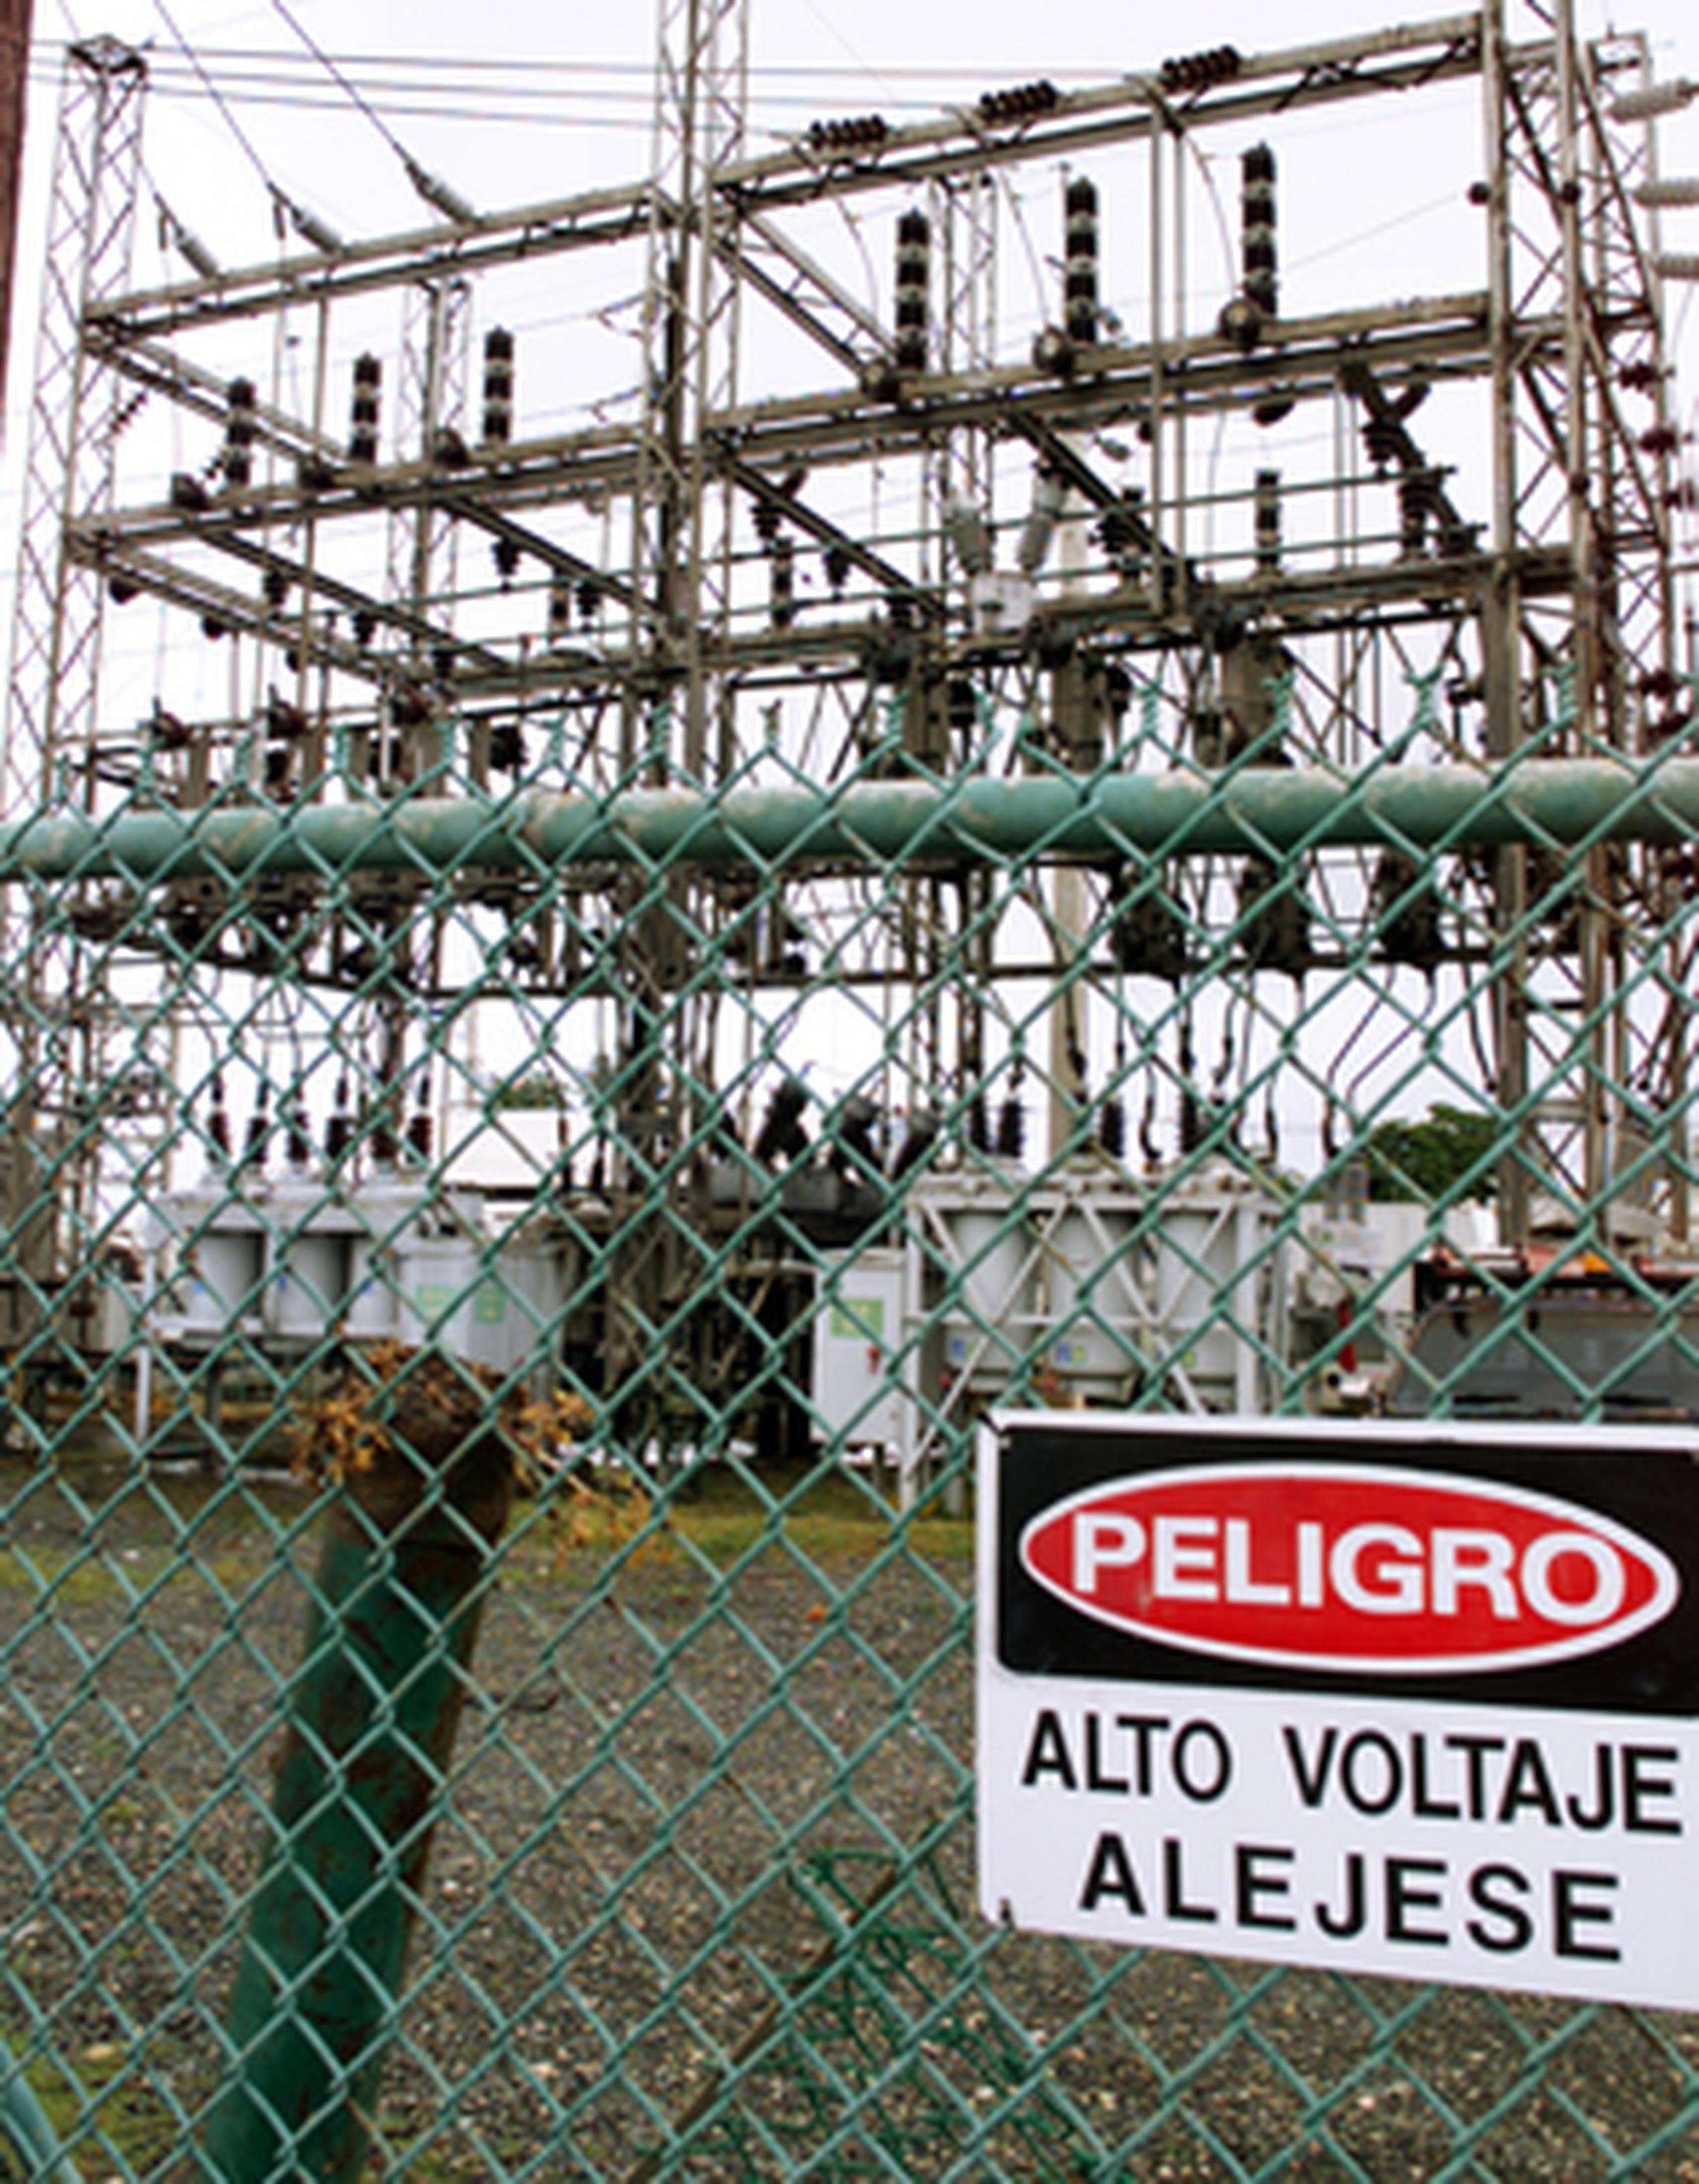 El gobernador censuró las declaraciones de Ángel Figueroa Jaramillo quien atribuyó al estatuto el suicidio de un celador jubilado de la AEE y la explosión en la central termoeléctrica de San Juan.